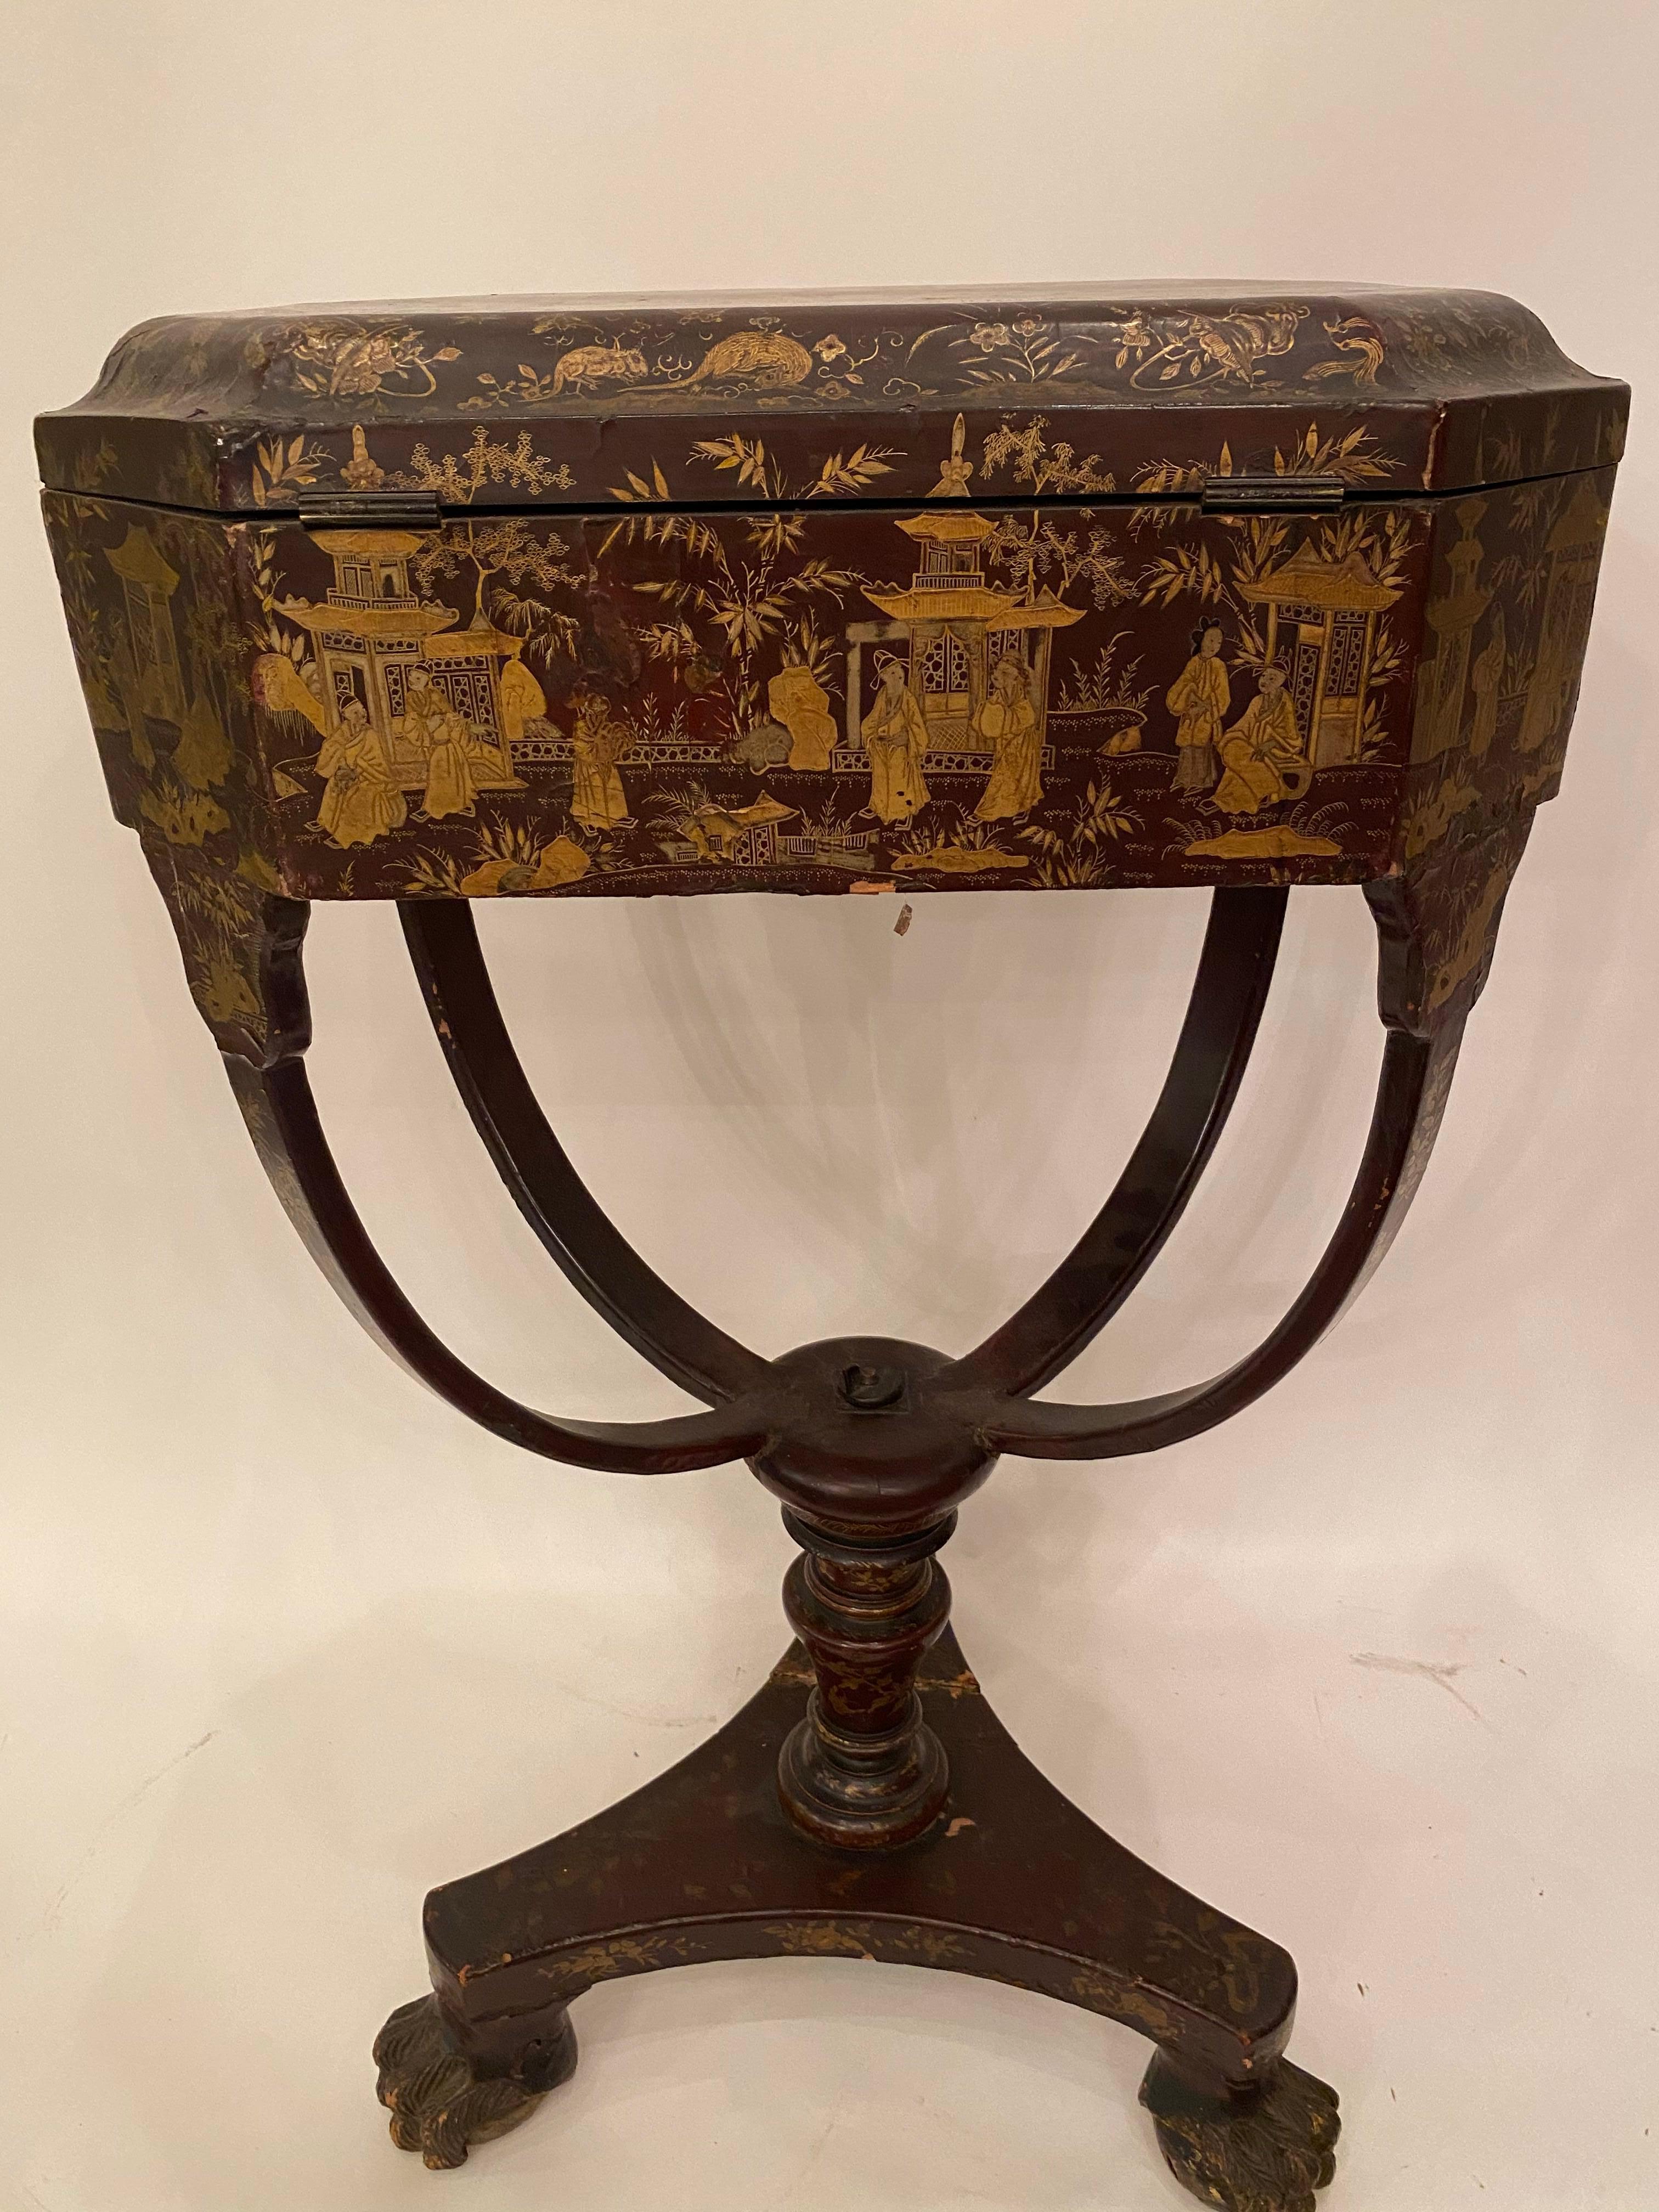 Antigua mesa de costura china lacada del siglo XIX, con escenas pintadas a mano y hermosas patas. Laca negra dorada de exportación por toda la mesa.